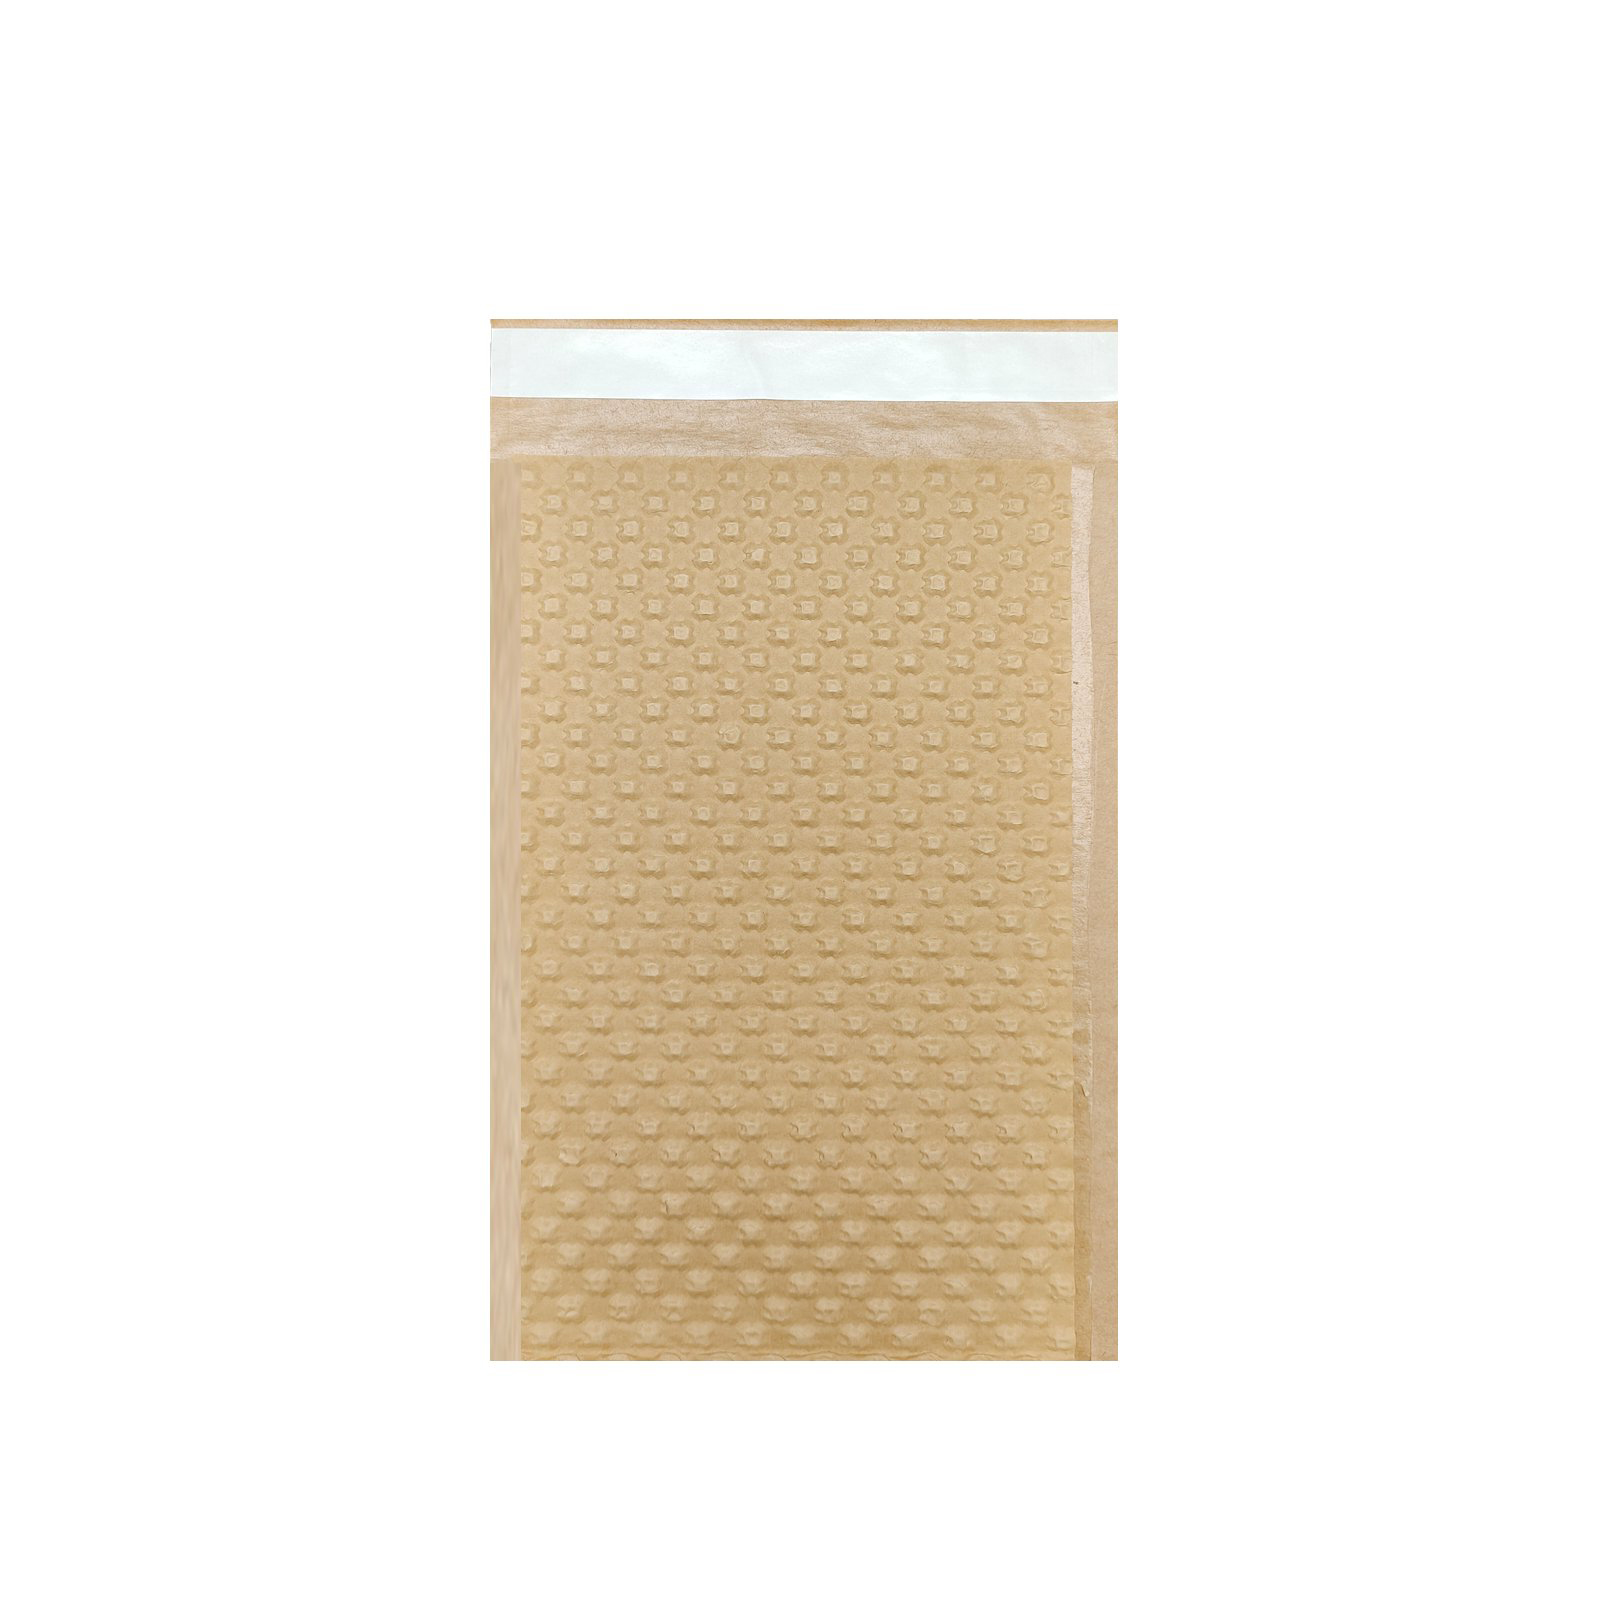 Anuncio publicitario KRAFBUBBLE marrón-mediano de 2 capas 200 piezas (200 mm × 380 mm / 7.87 '' × 14.96 '')